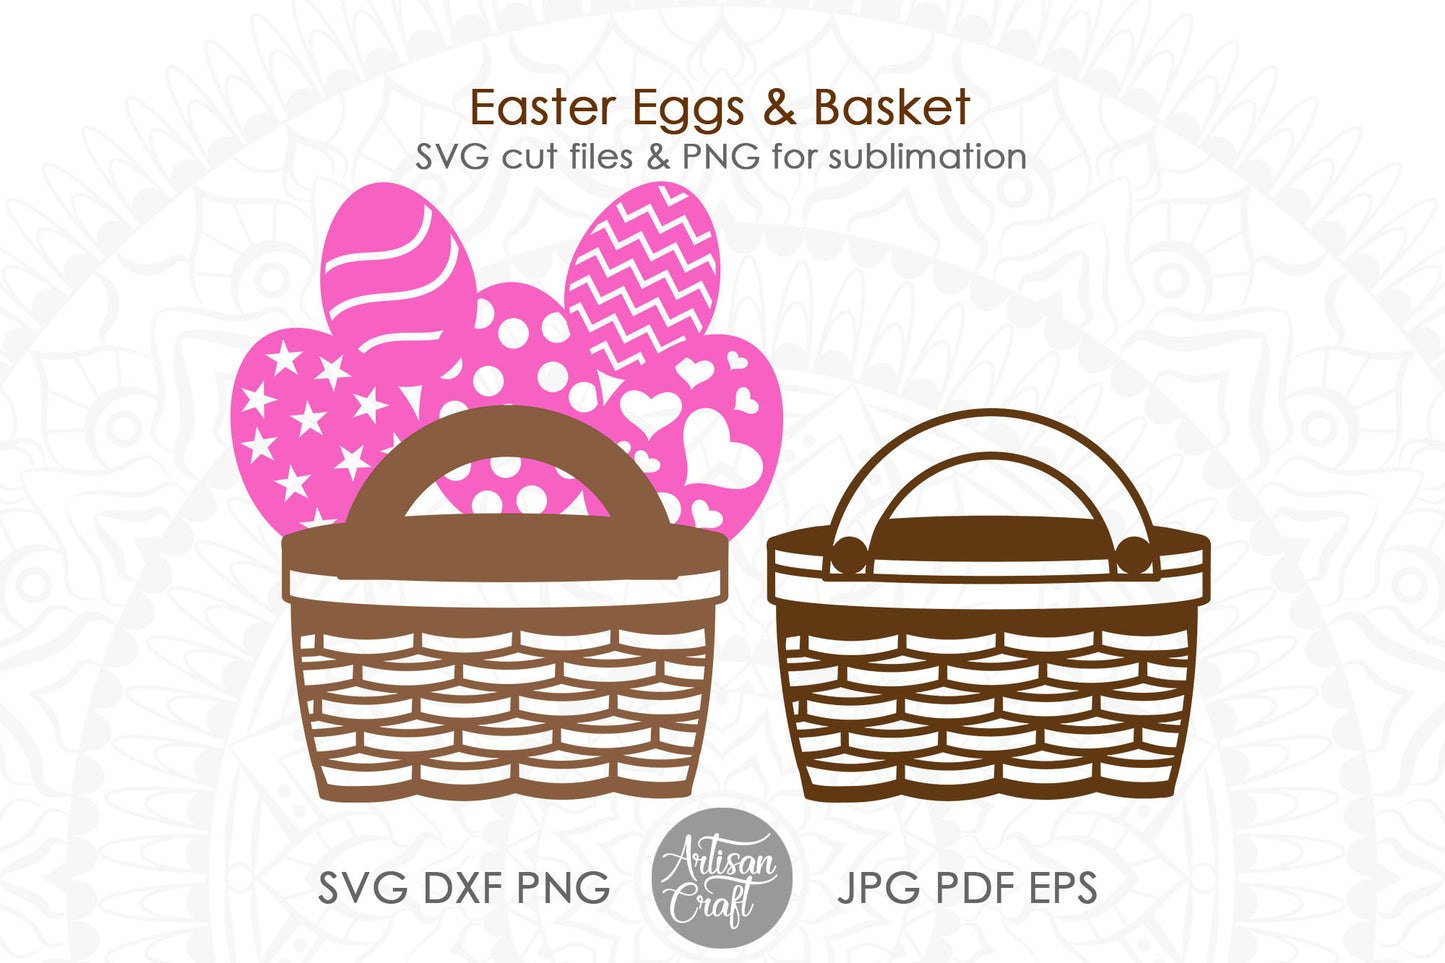 Wicker basket SVG, Easter egg basket SVG files